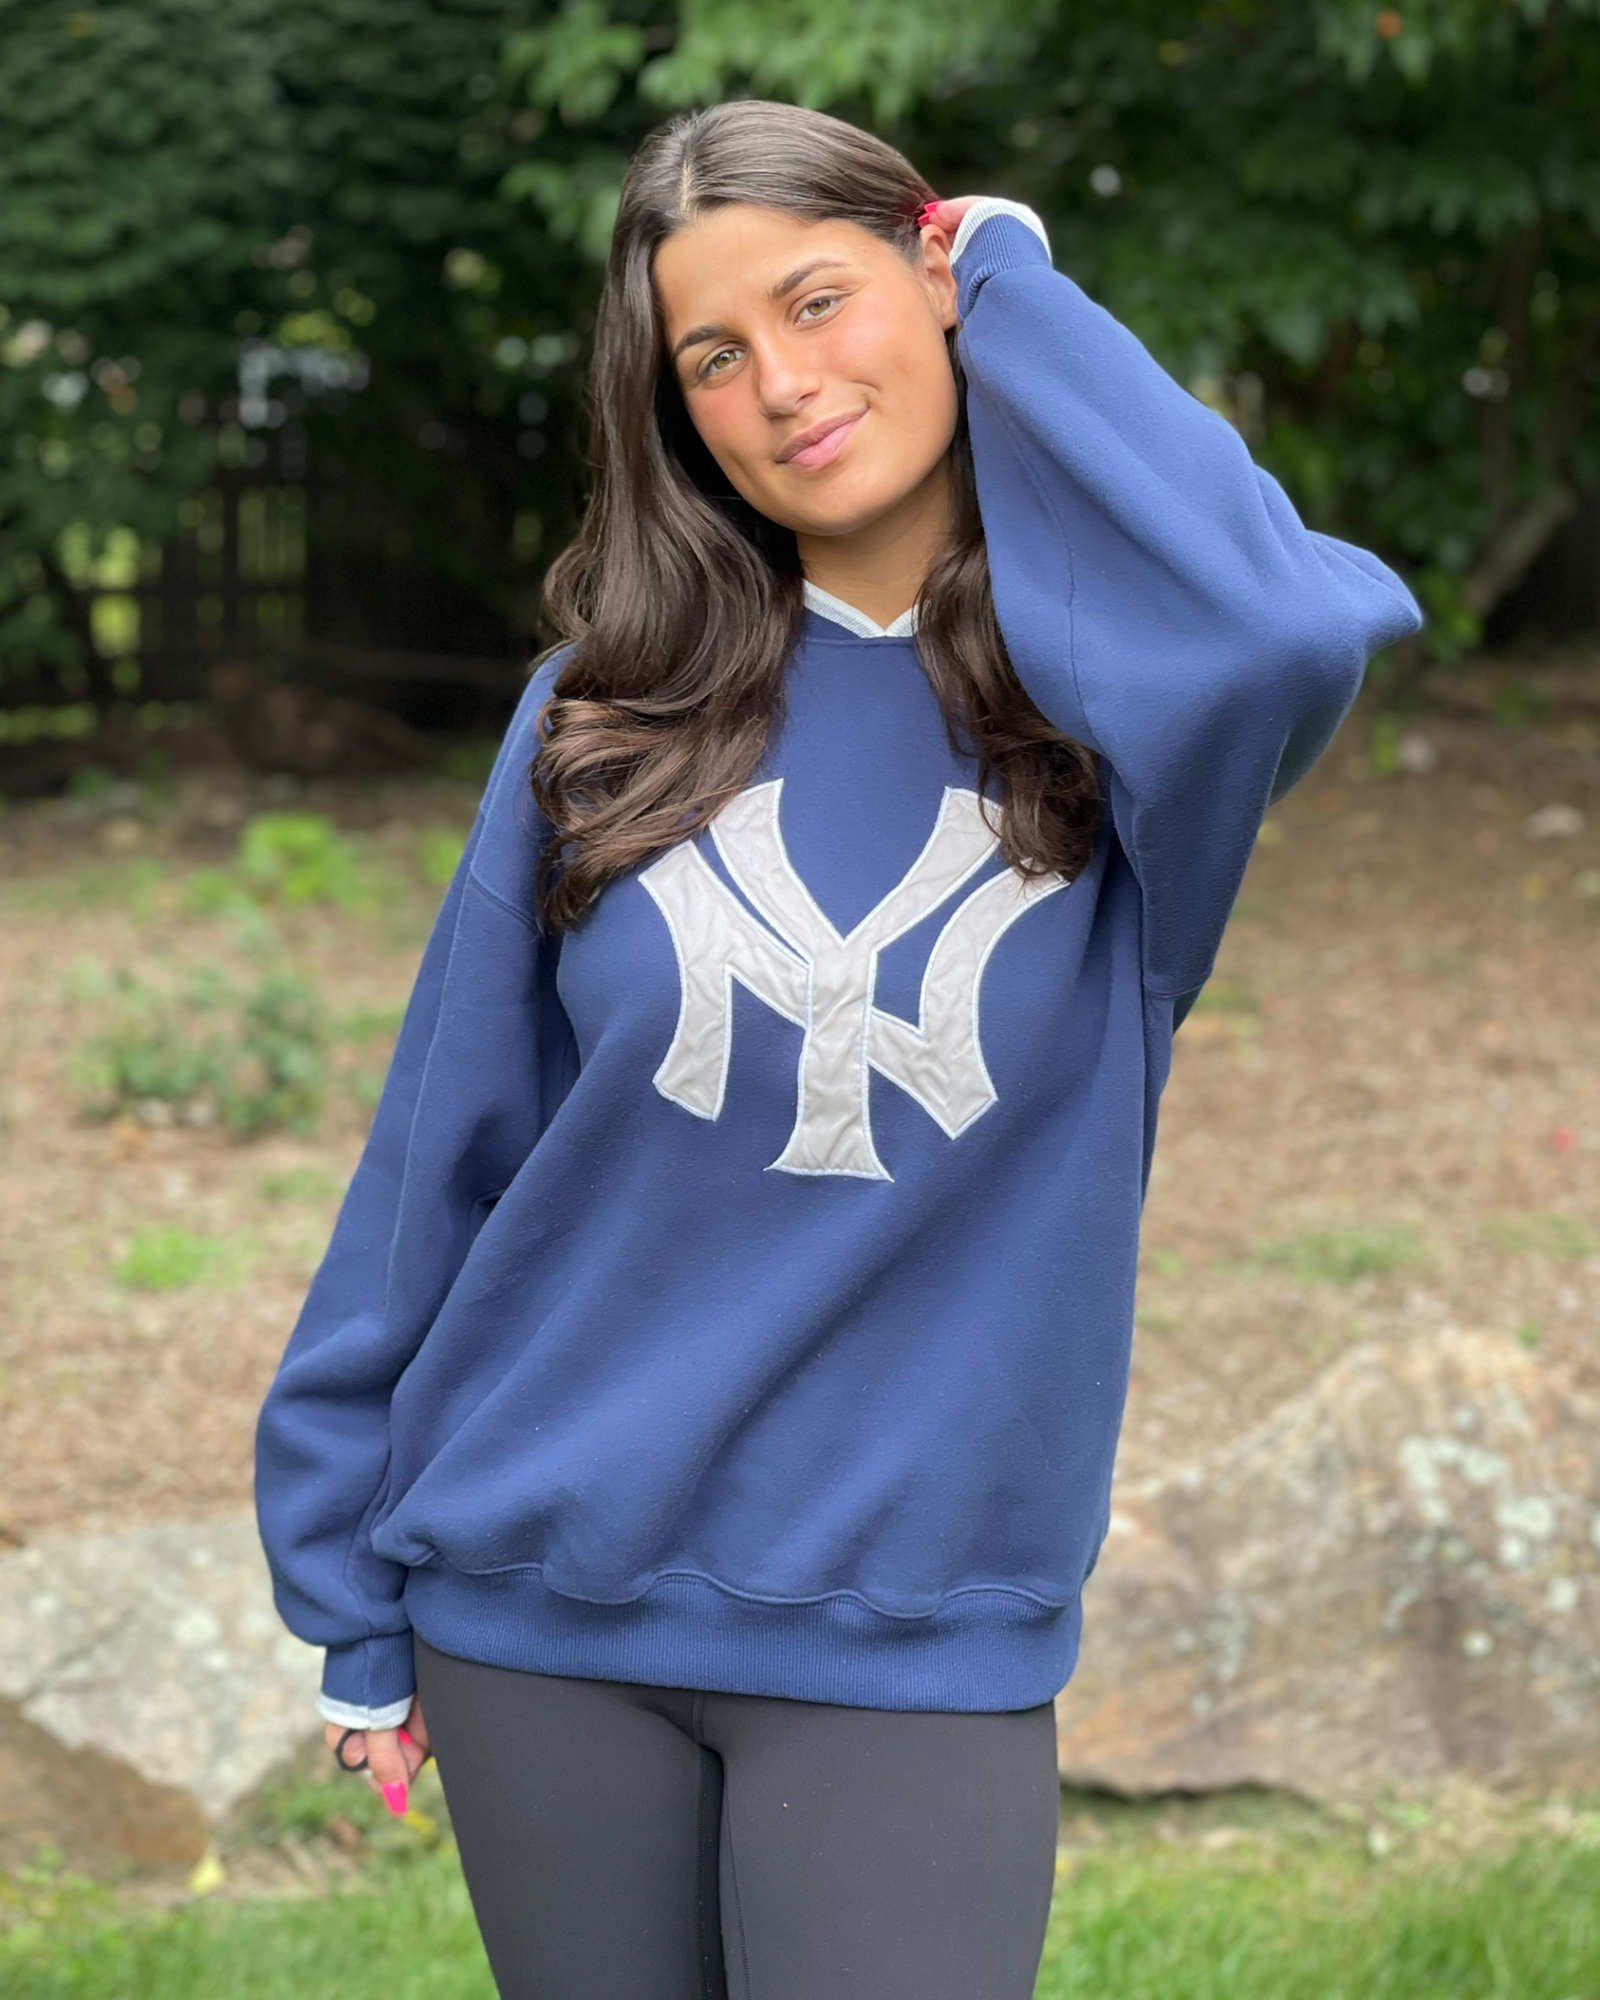 Vintage Yankees Sweatshirt